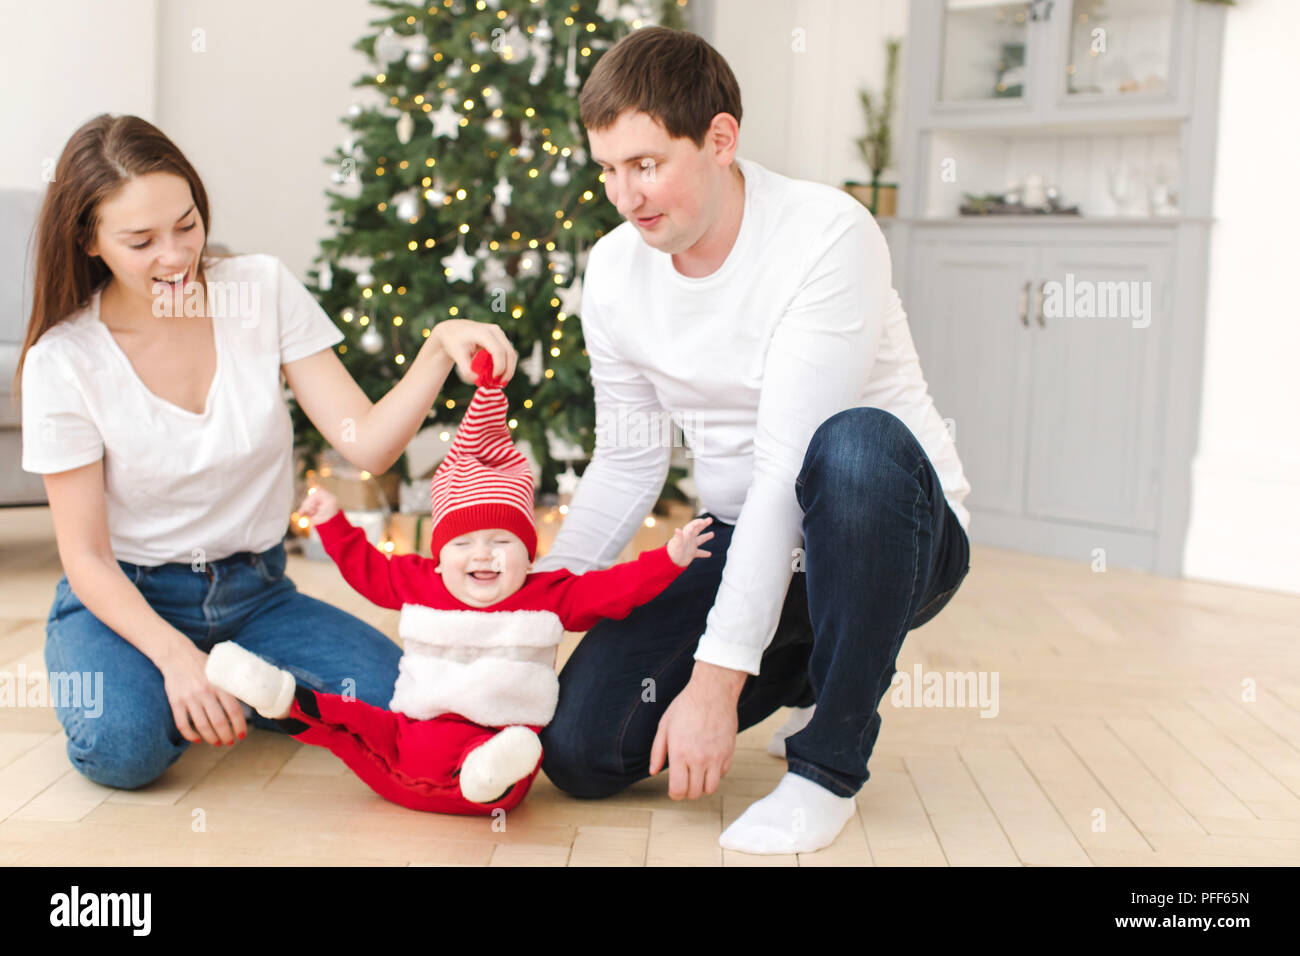 Les parents de jouer avec bébé près de l'arbre de Noël Banque D'Images